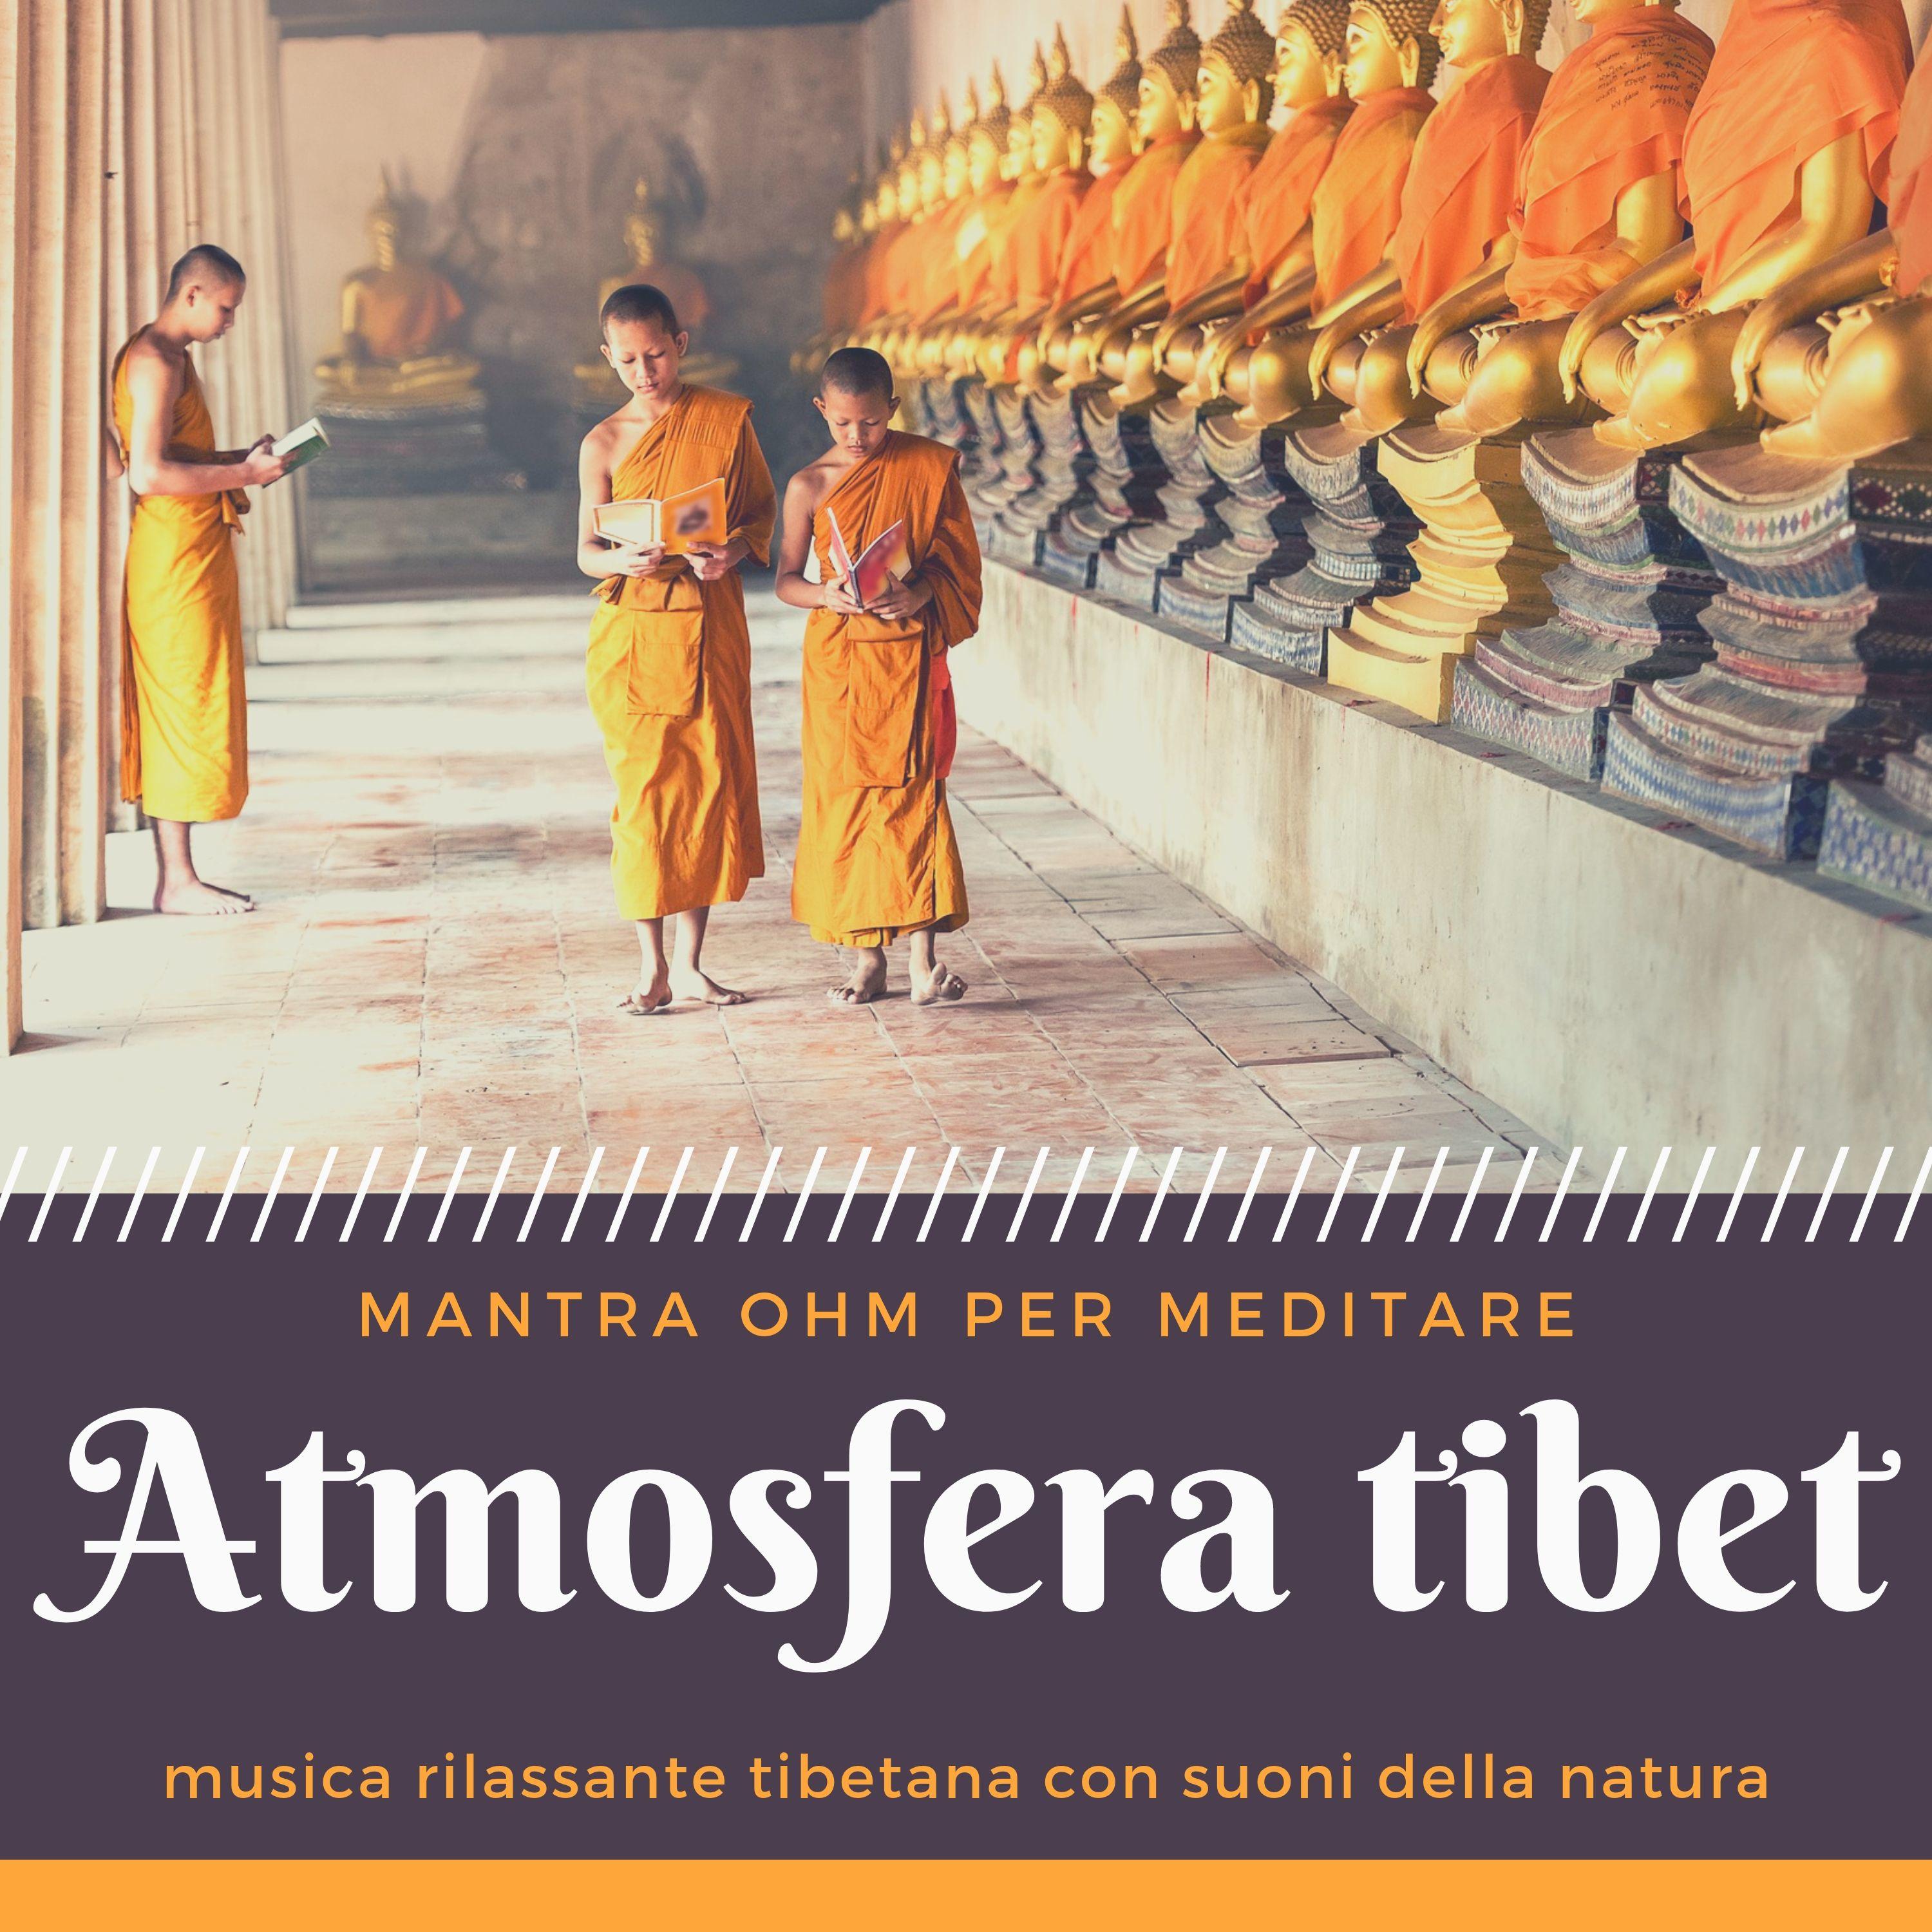 Atmosfera tibet: musica rilassante tibetana con suoni della natura, mantra ohm per meditare